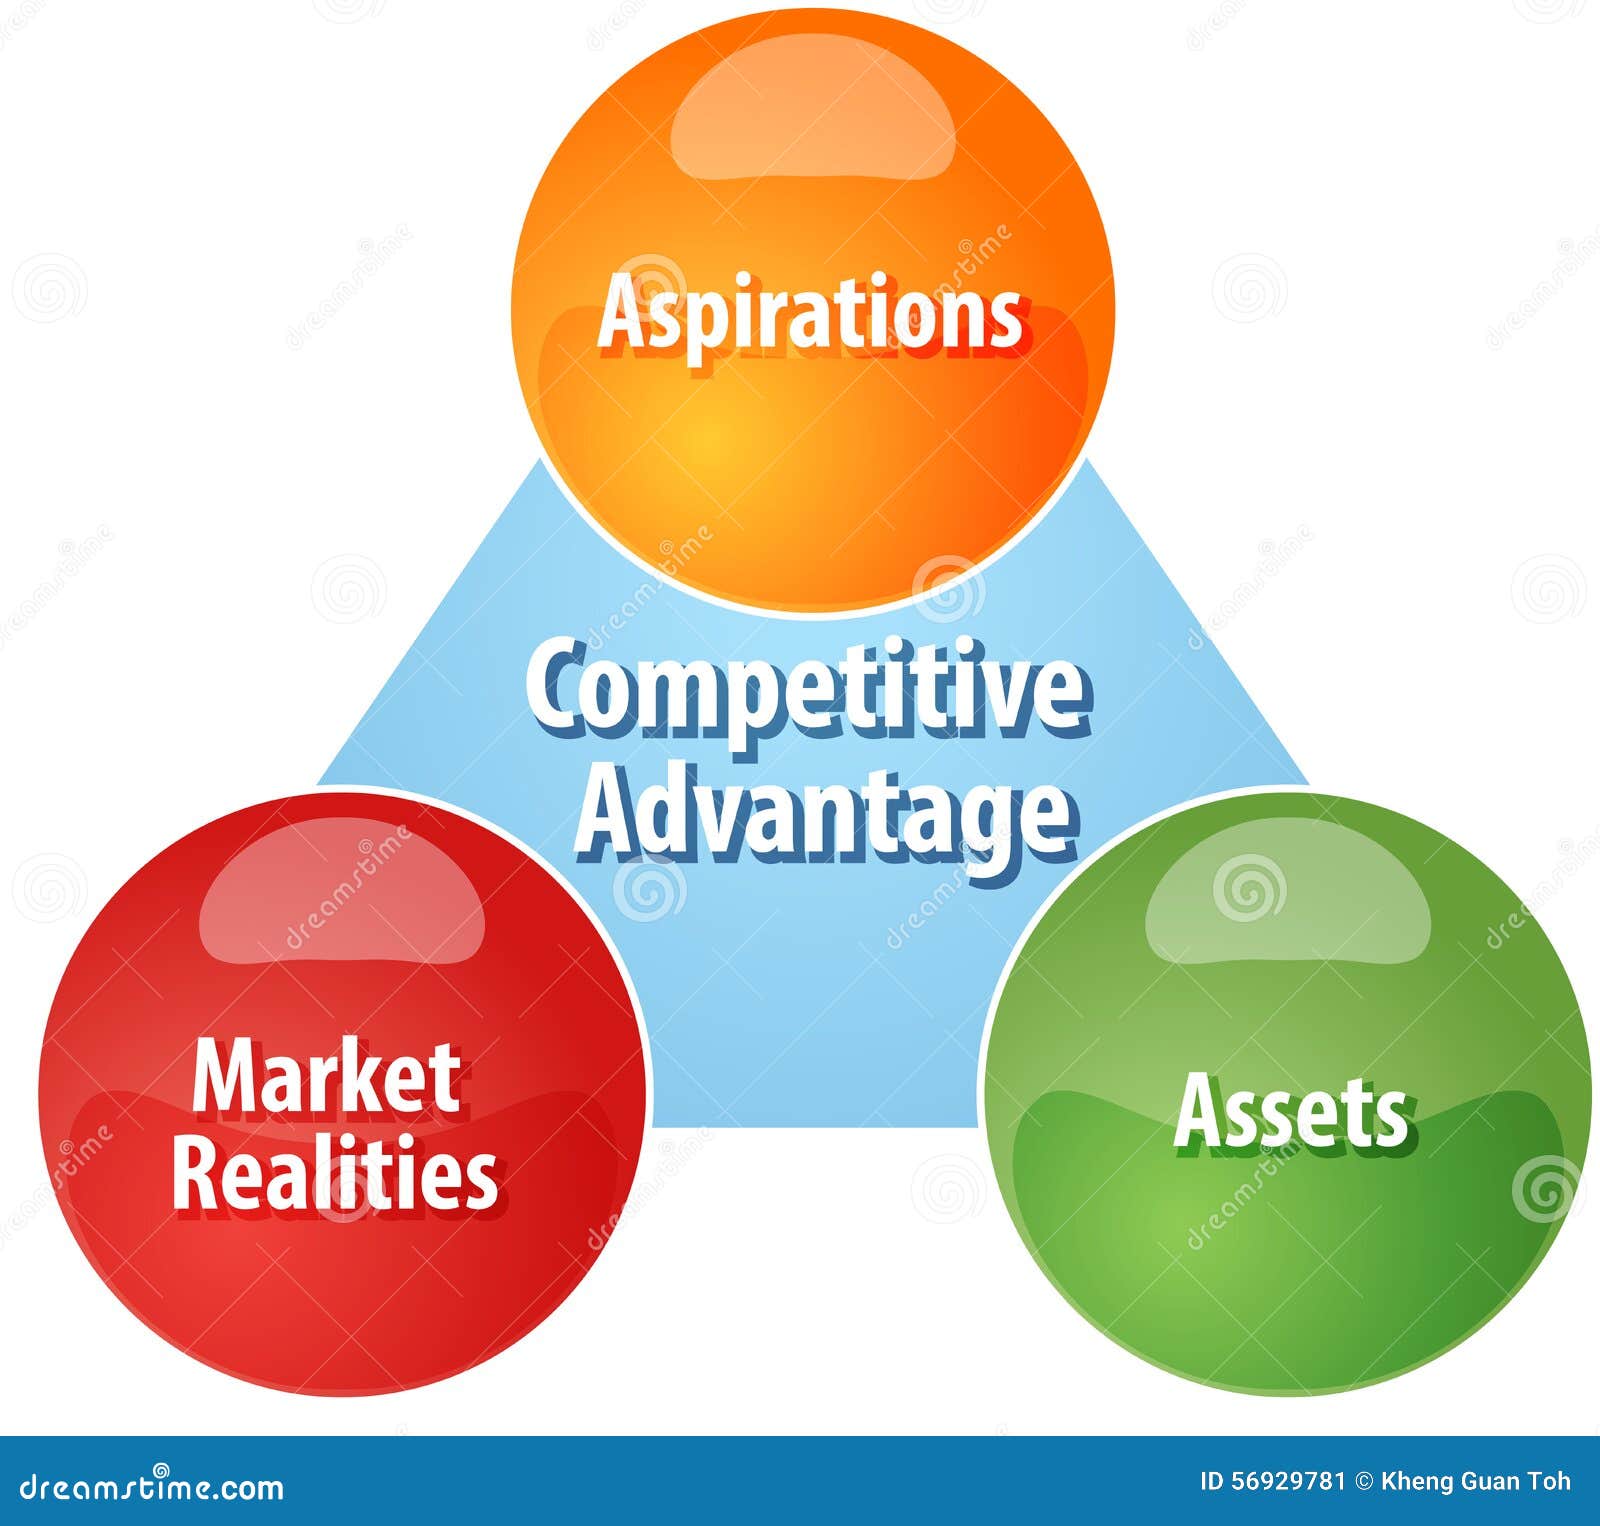 competitive advantage business plan